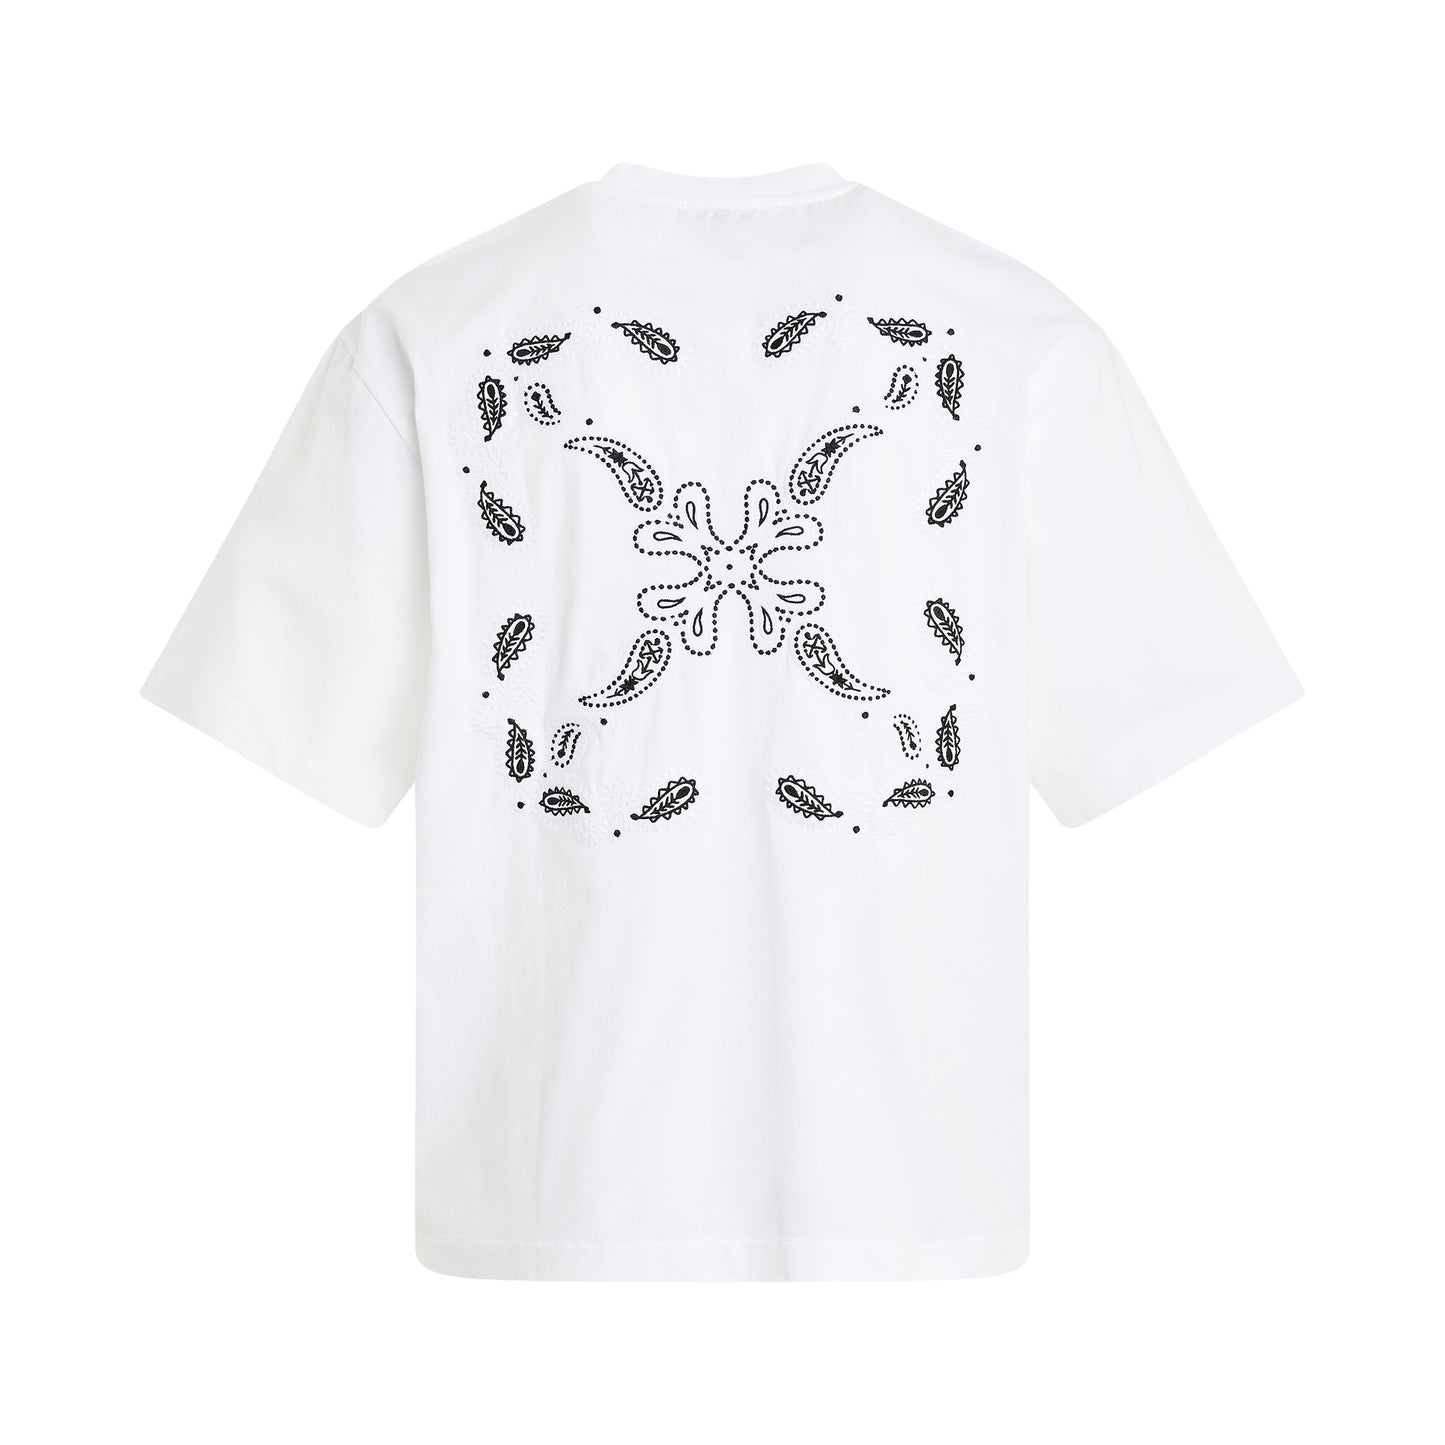 Bandana Arrow Skate T-Shirt in White/Black